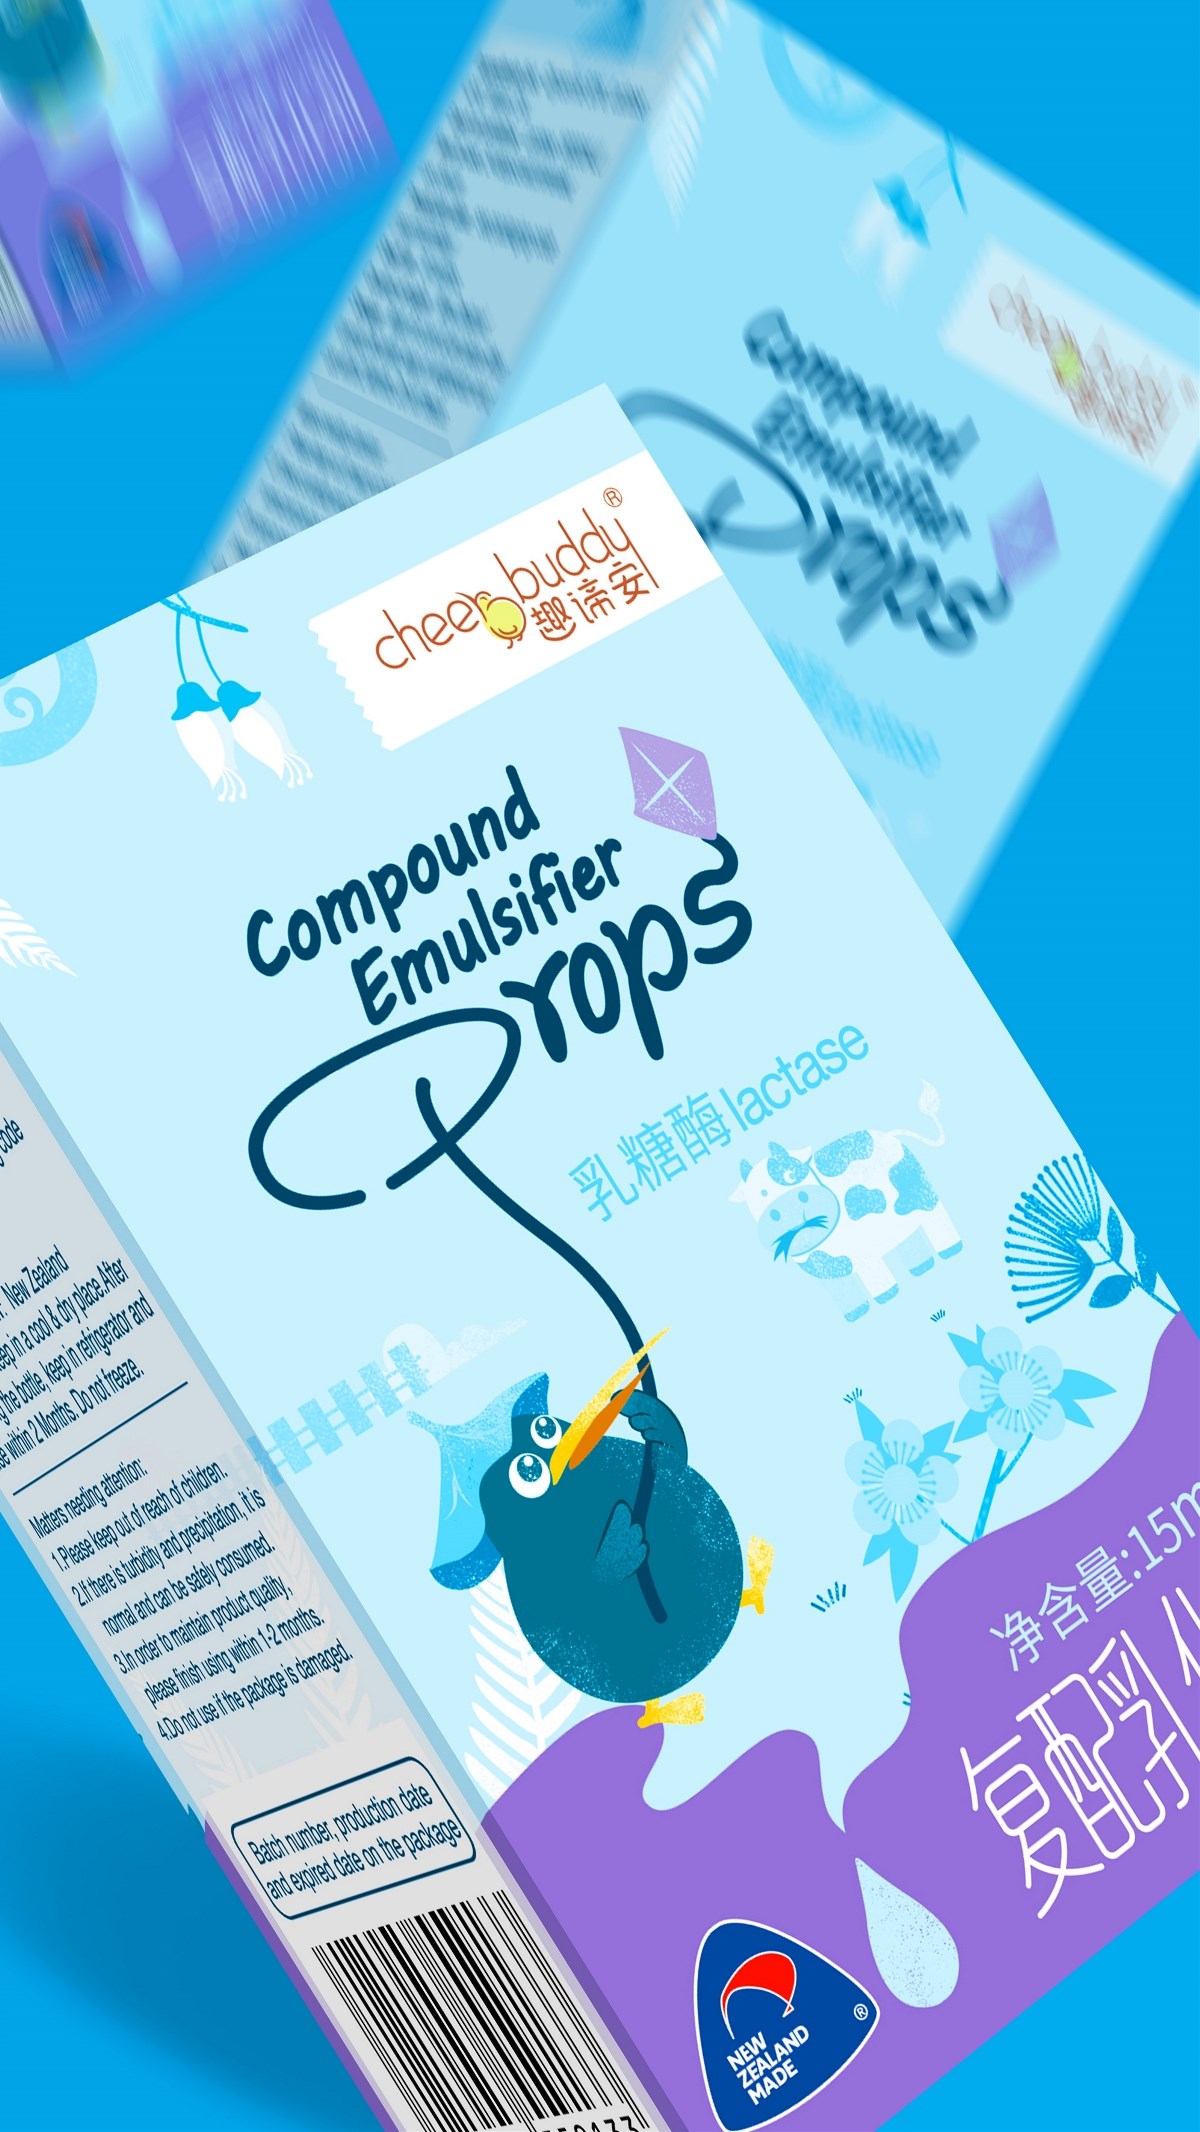 儿童营养品包装设计 营养补充剂 滴剂 食品包装  卡通风 新西兰鸟类